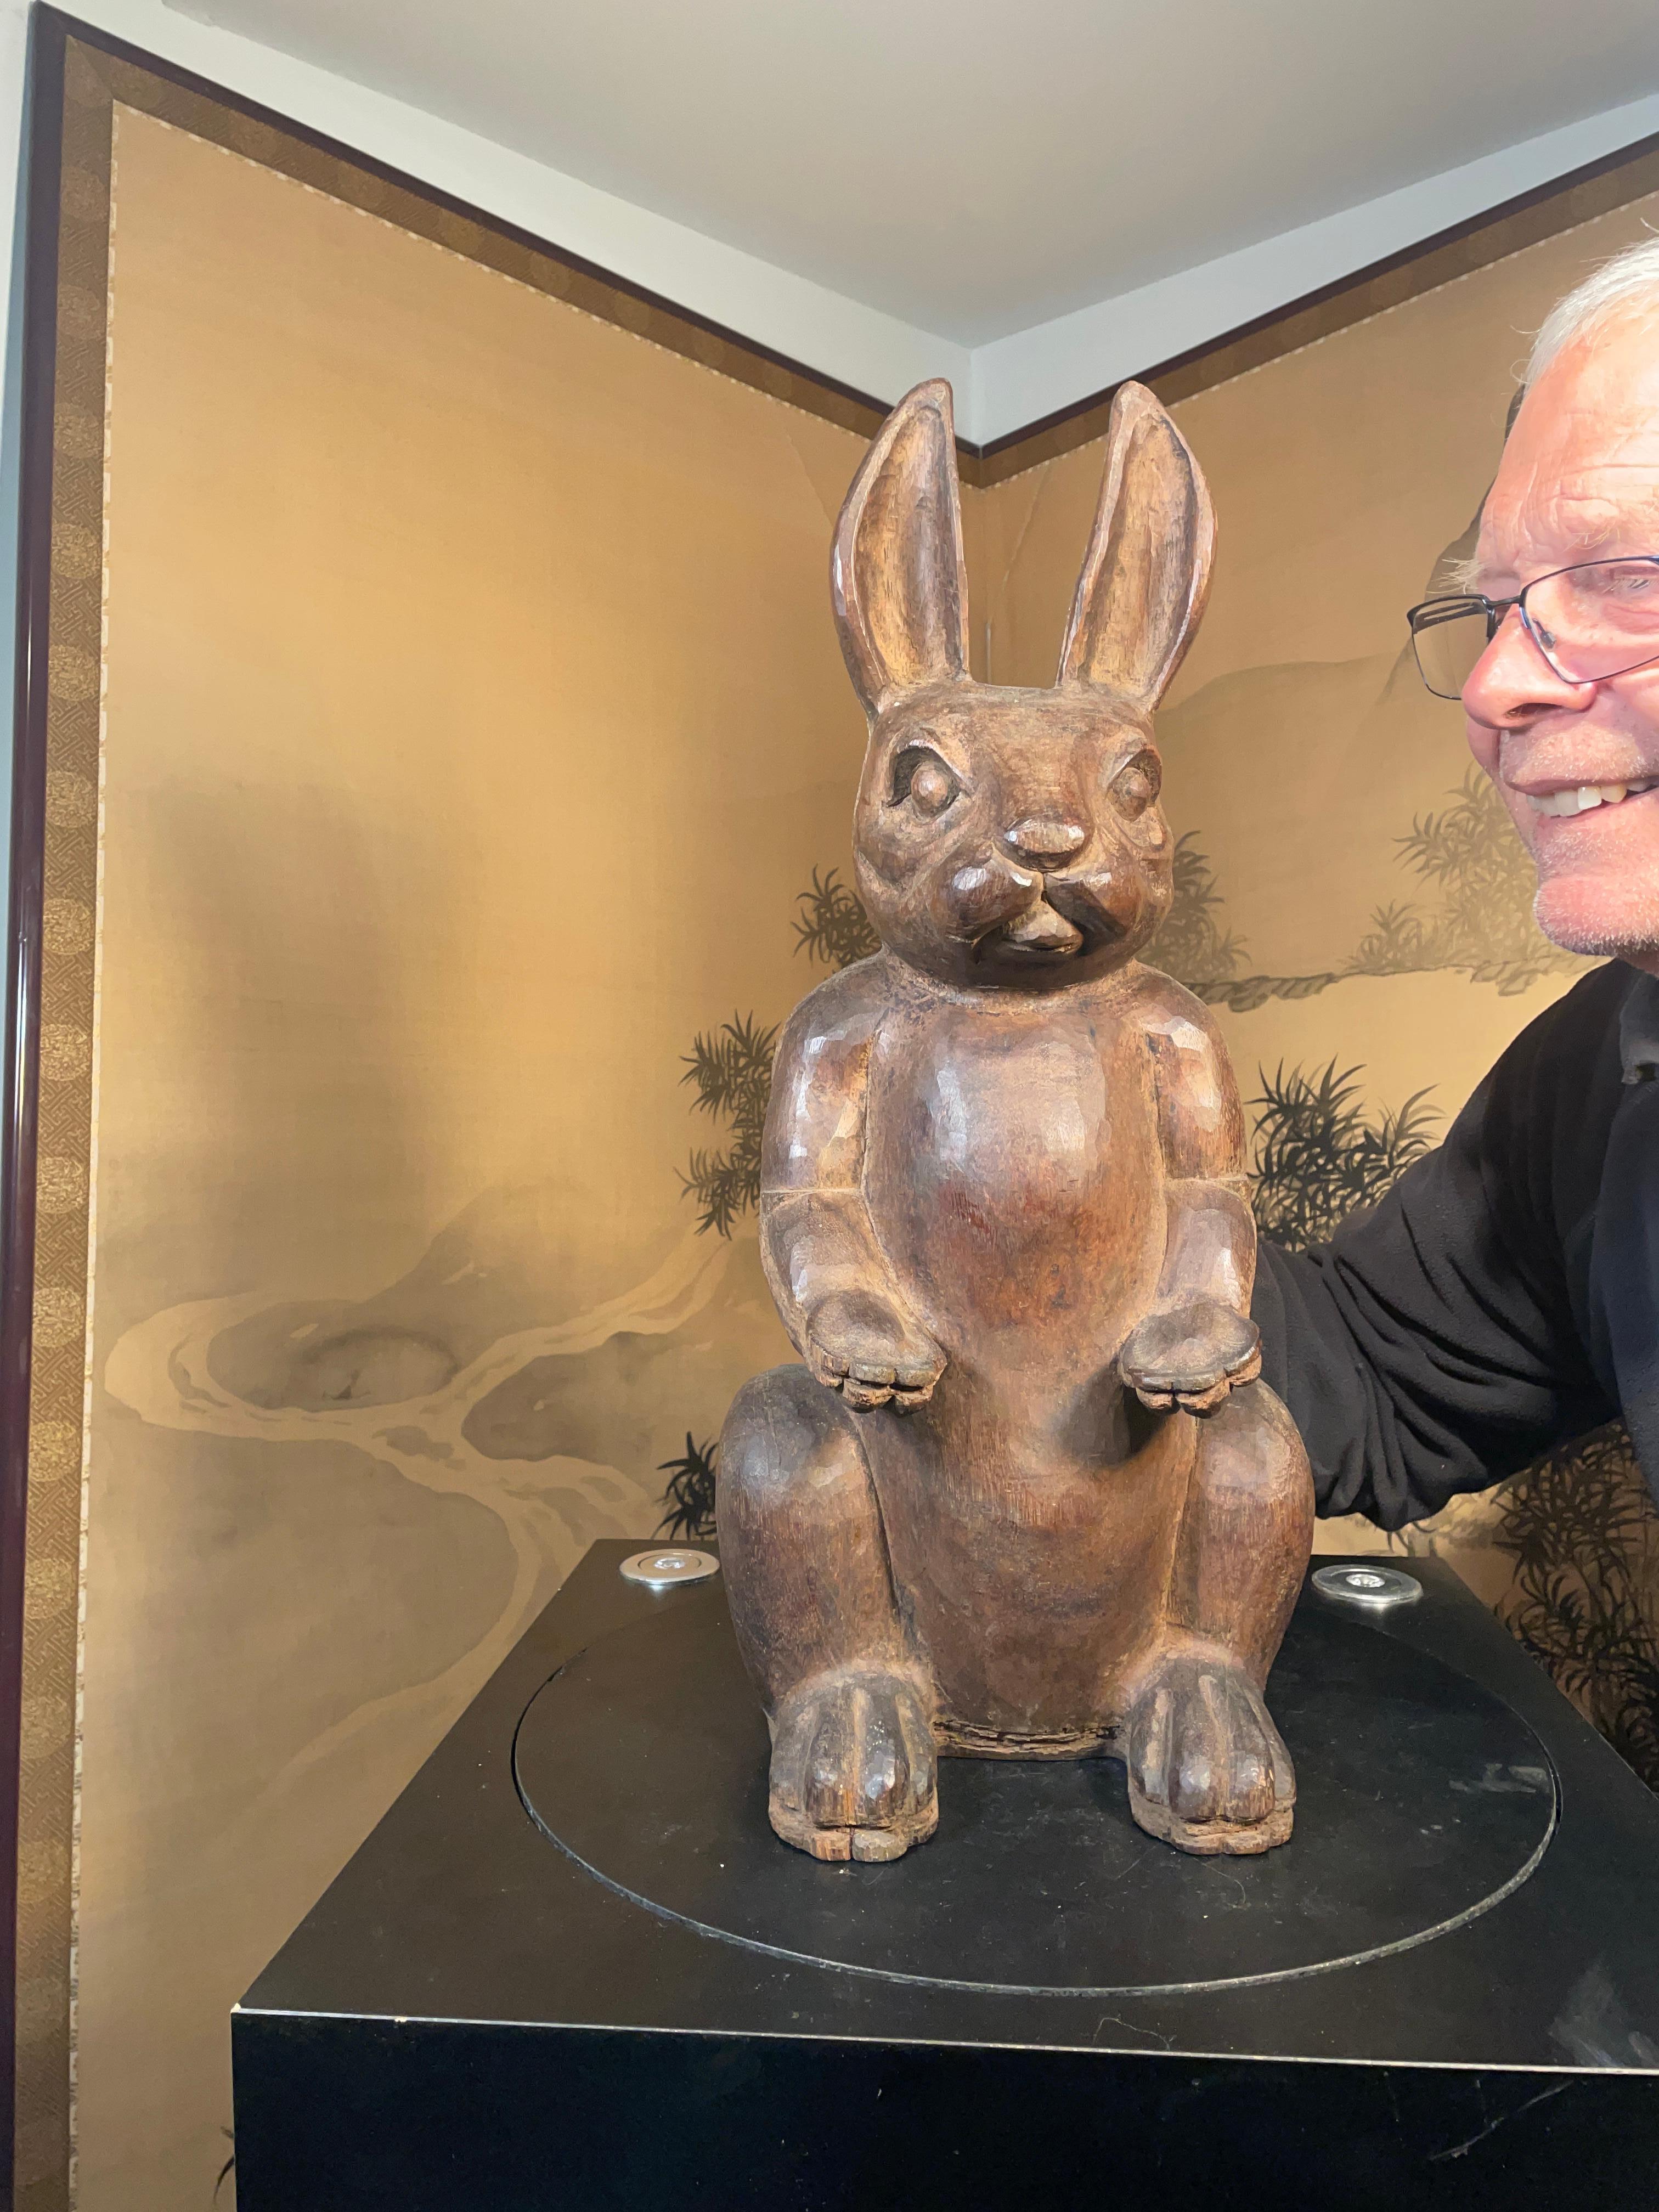 Provenant d'une collection d'art populaire américain de sculptures d'animaux - une seule.

Un magnifique lapin géant, signé et lourdement sculpté à la main, mesurant 21 pouces de haut et 9 pouces de large, l'un des plus grands lapins sculptés à la